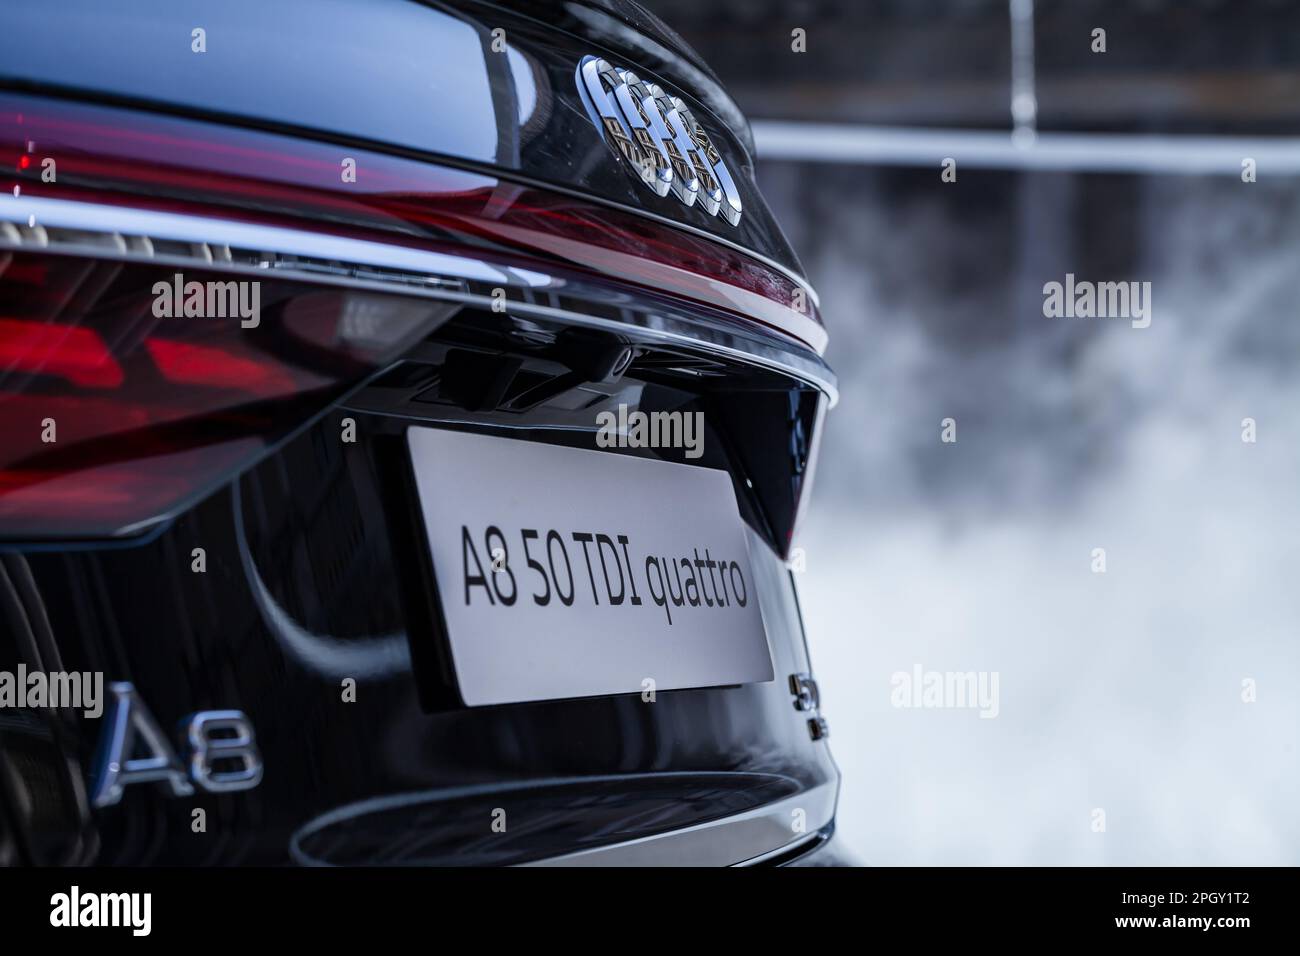 Vue rapprochée de l'arrière d'une Audi A8 noire avec plaque d'immatriculation et feux de signalisation. Banque D'Images